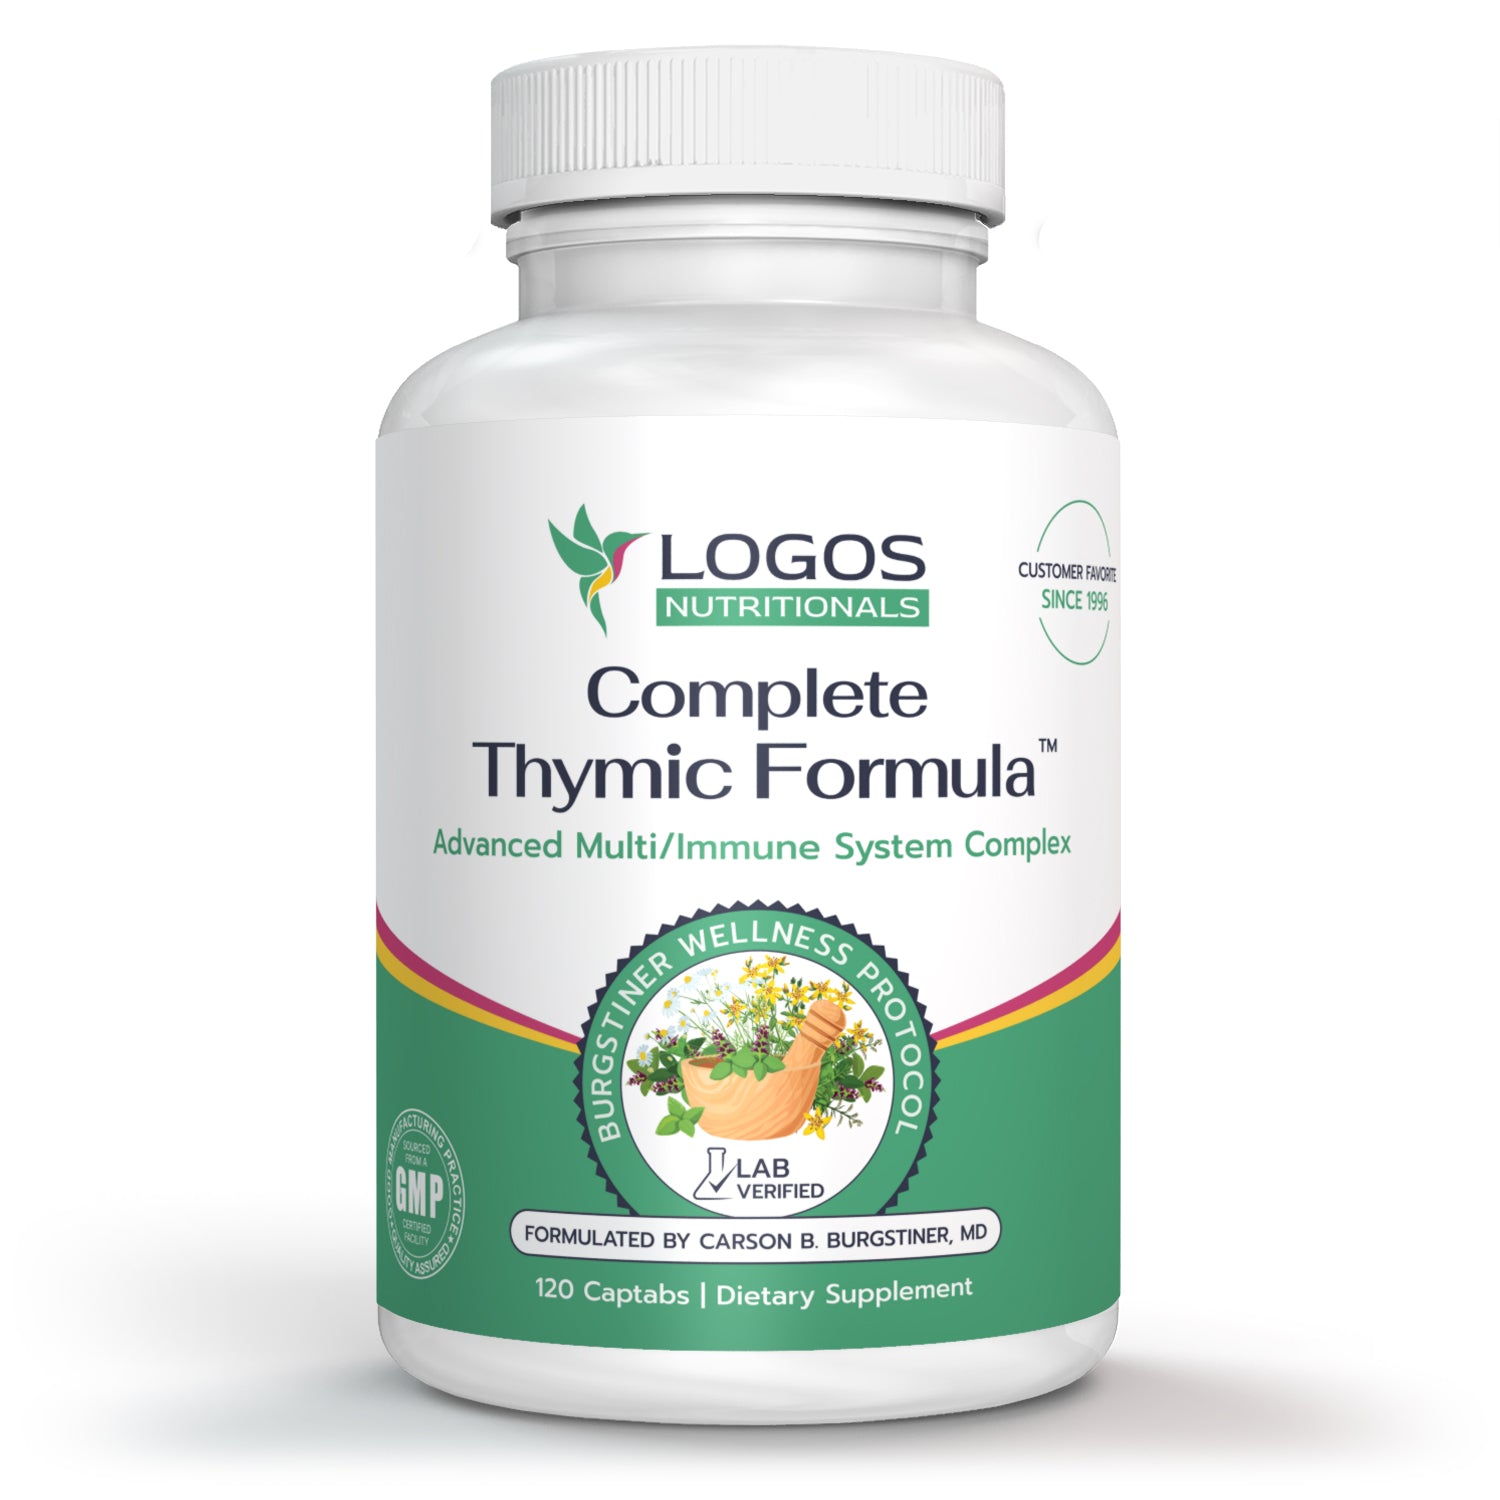 Complete Thymic Formula™